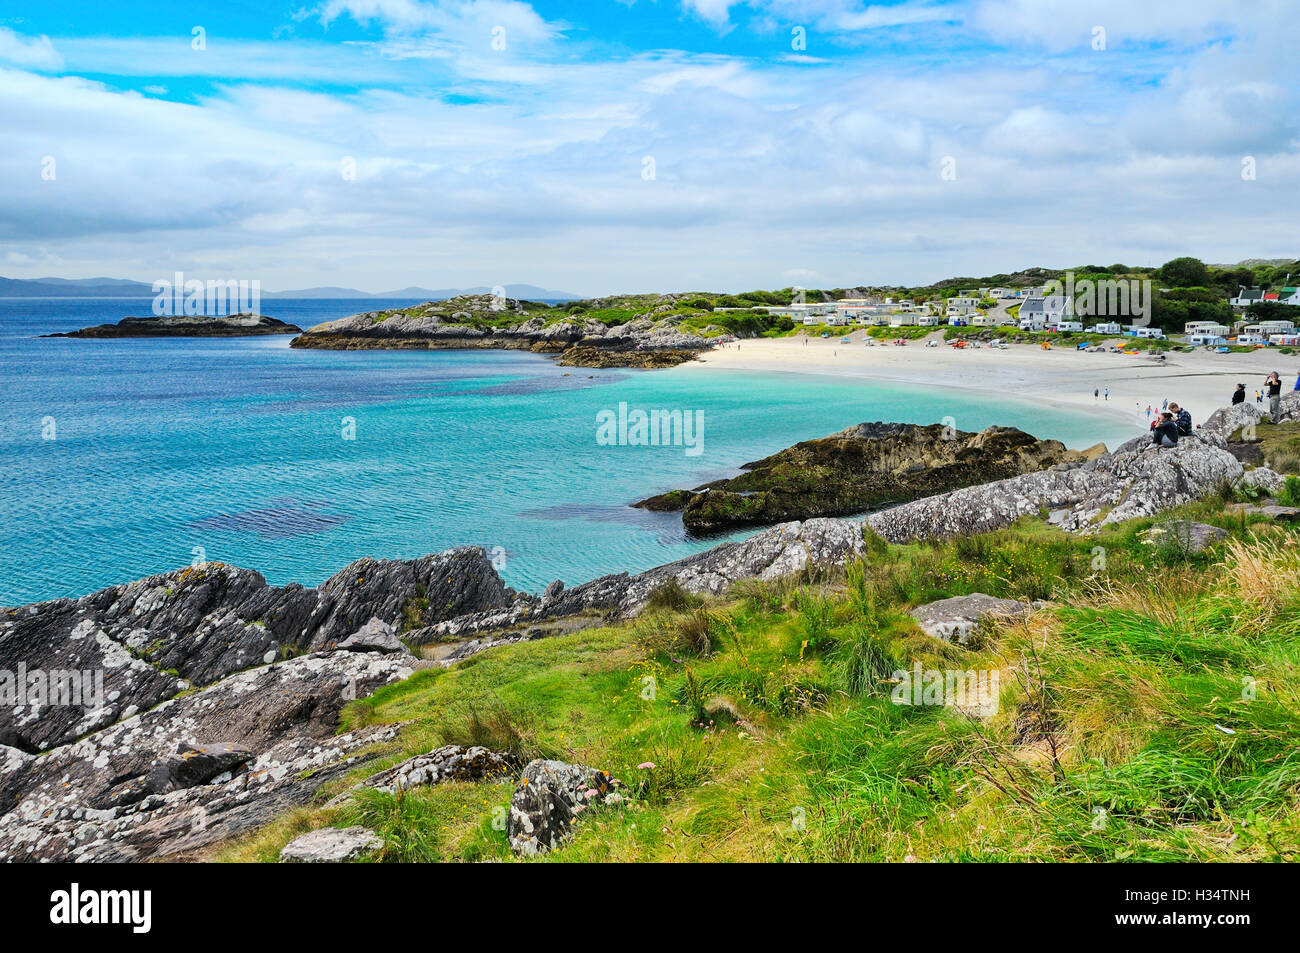 La plage de sable et belle côte rocheuse avec de l'eau bleu sur la route N70, Glanbeg (Caherdaniel), comté de Kerry, Irlande. Banque D'Images